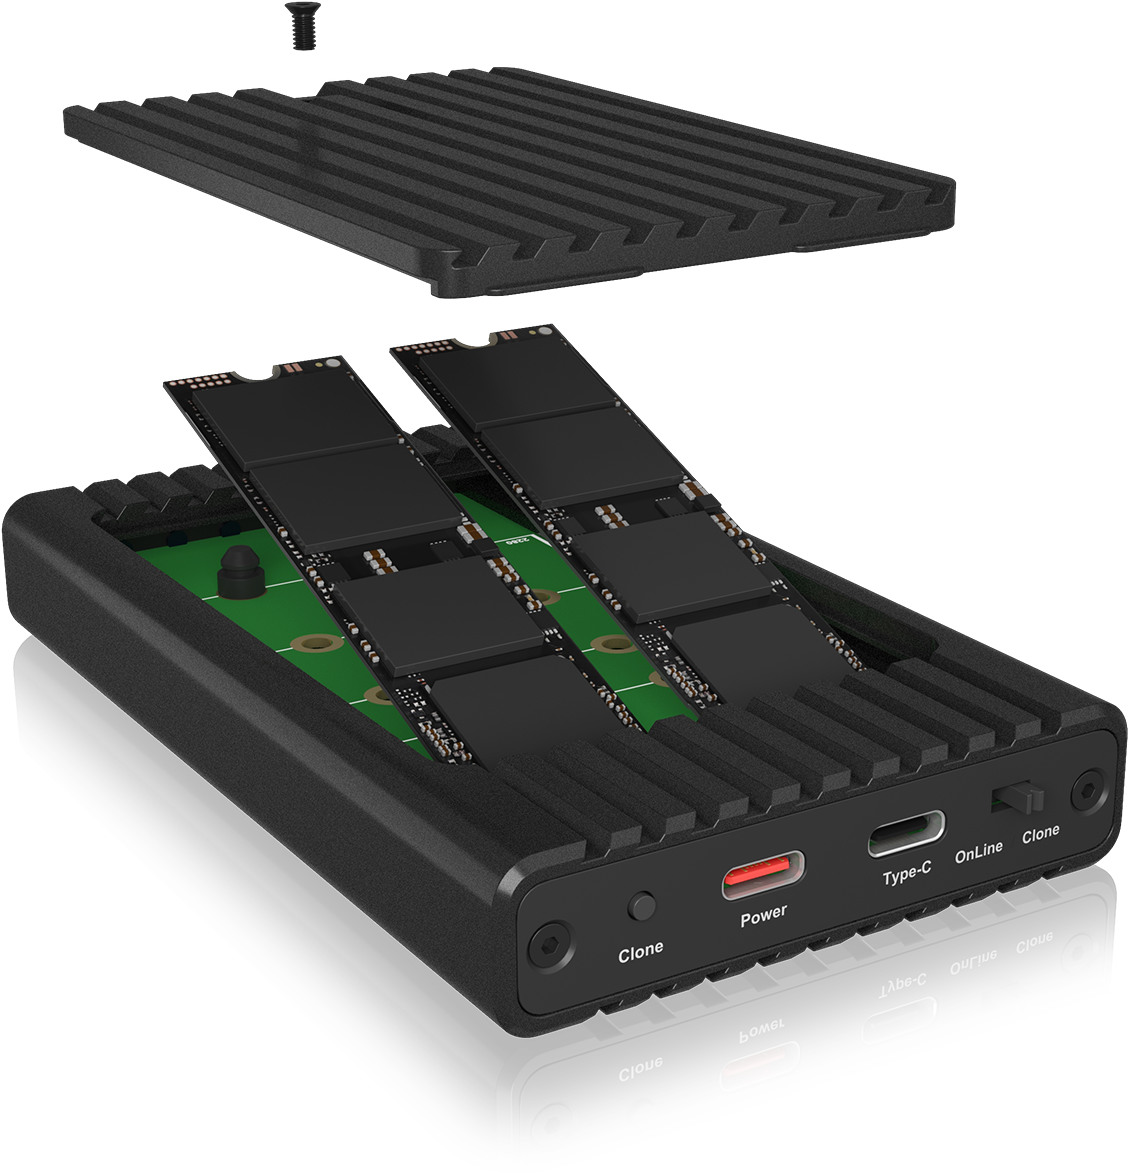 ICY BOX Gehäuse mit Klonfunktion für IB-2817MCL-C31 M.2 NVMe SSDs, USB-C 3.2 G2